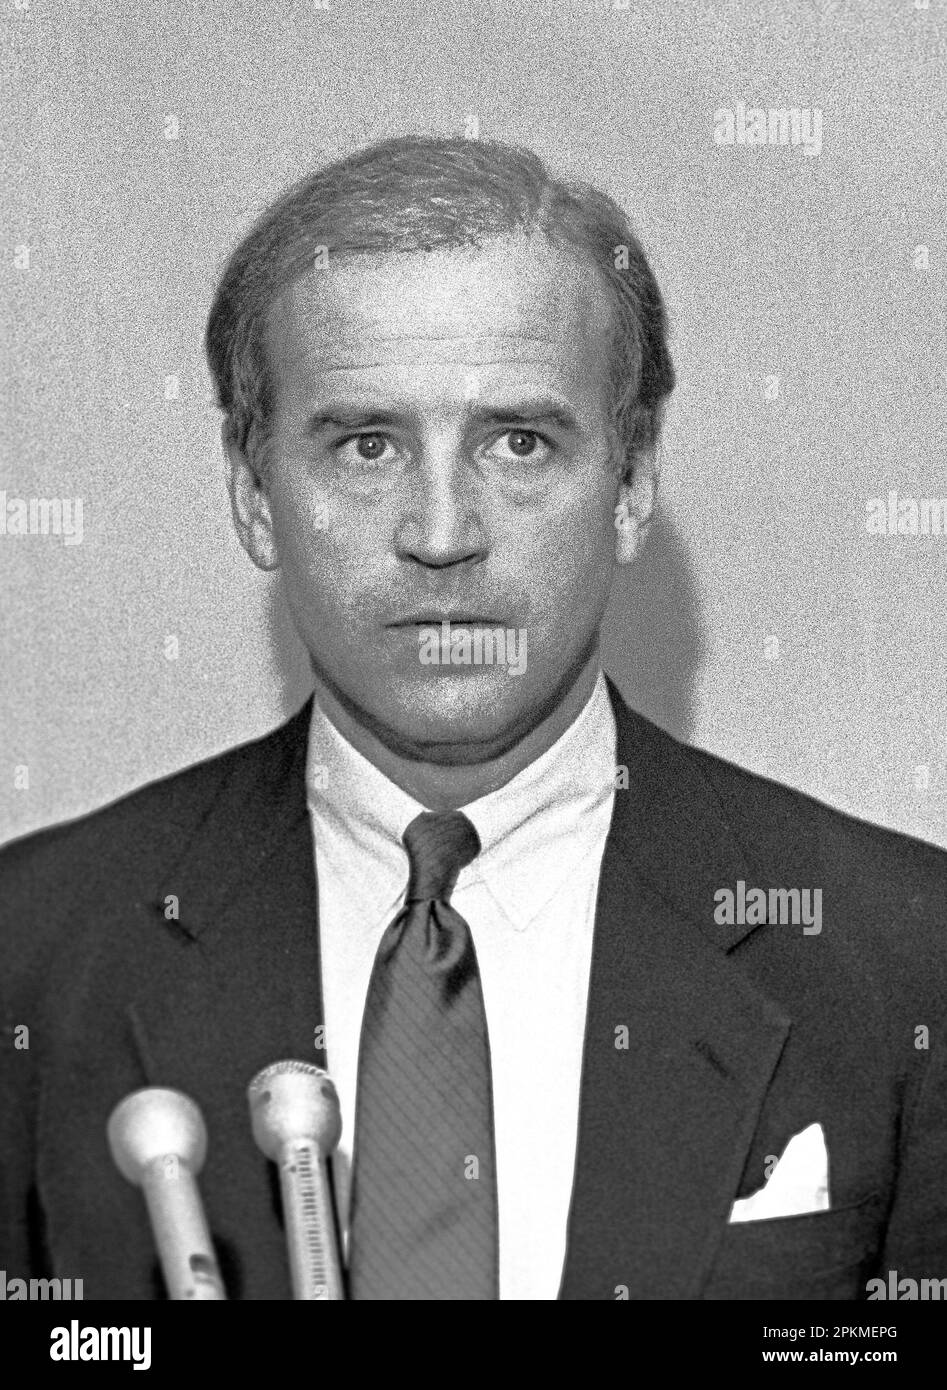 US Senator from Delaware, Joseph Biden campaigns for Democratic Presidential  nomination in 1987 Stock Photo